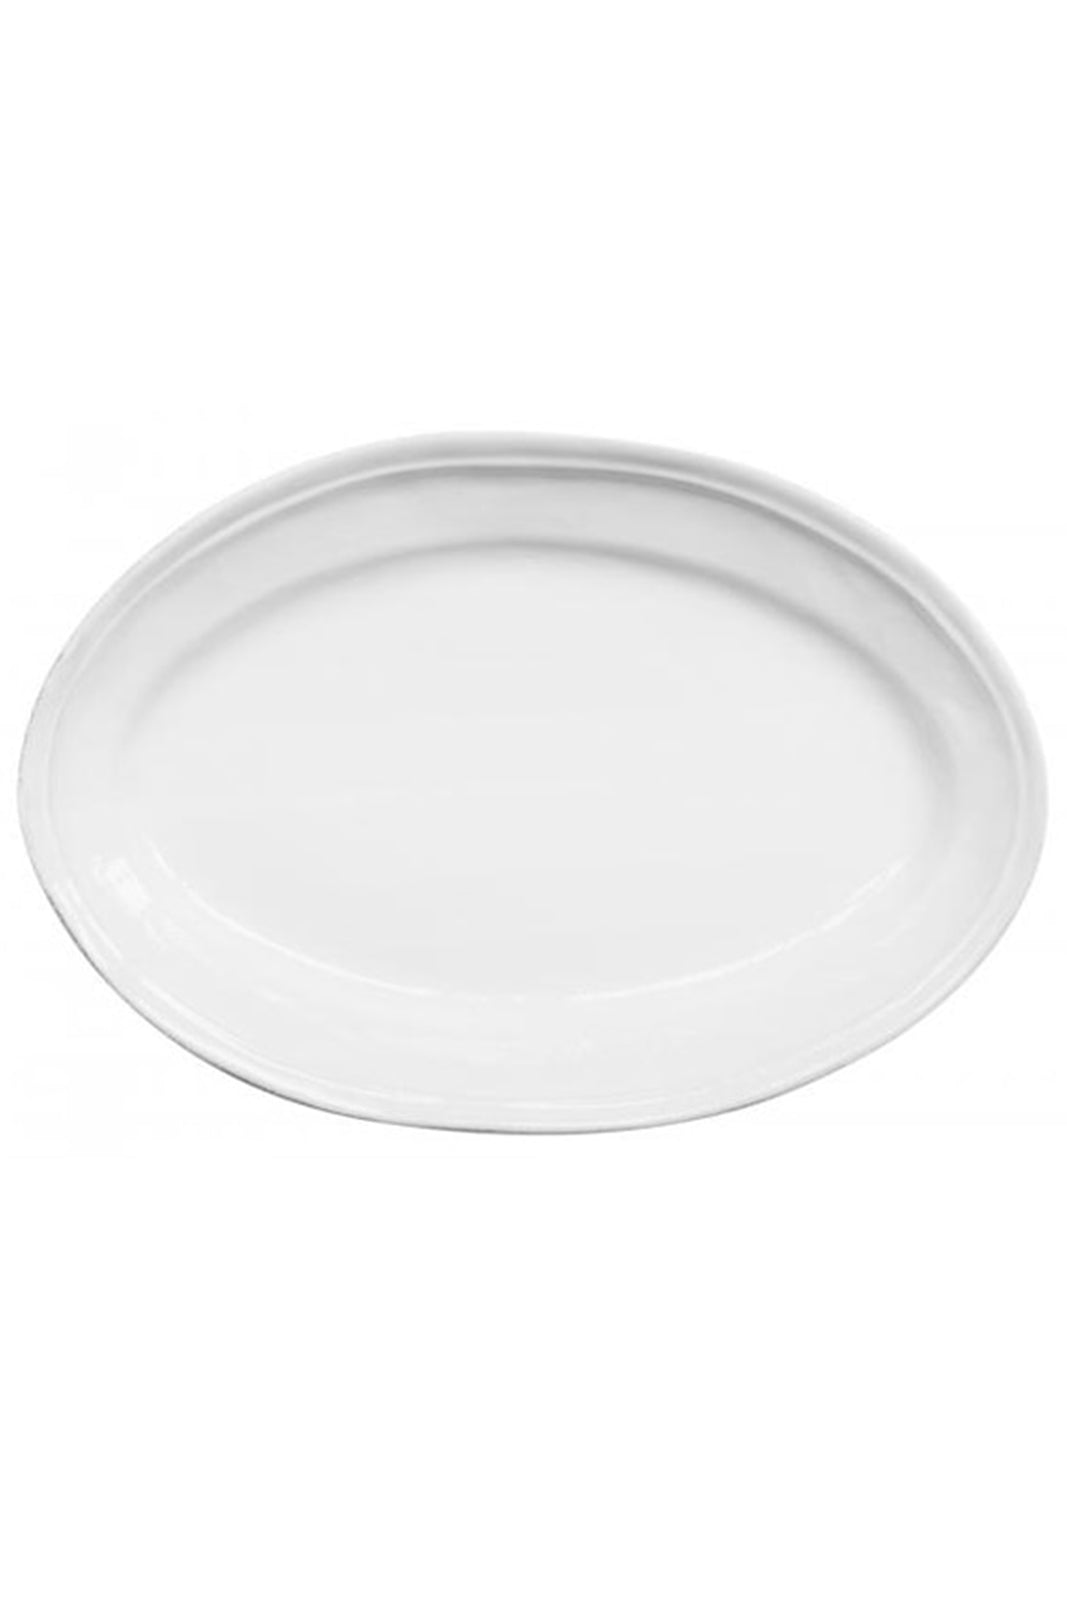 Large Oval Sobre Platter